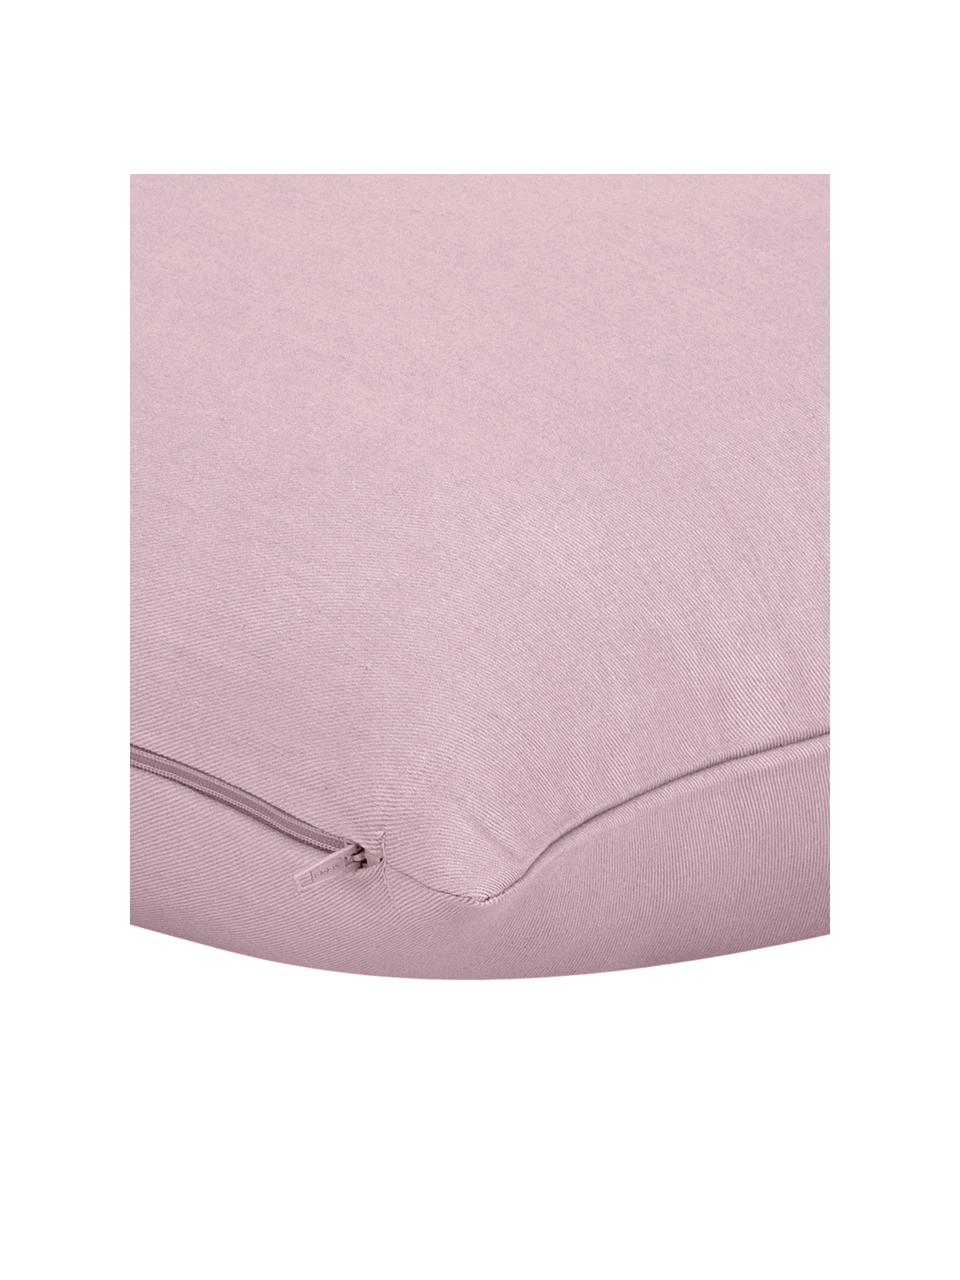 Poszewka na poduszkę z bawełny Mads, 100% bawełna, Blady różowy, S 30 x D 50 cm